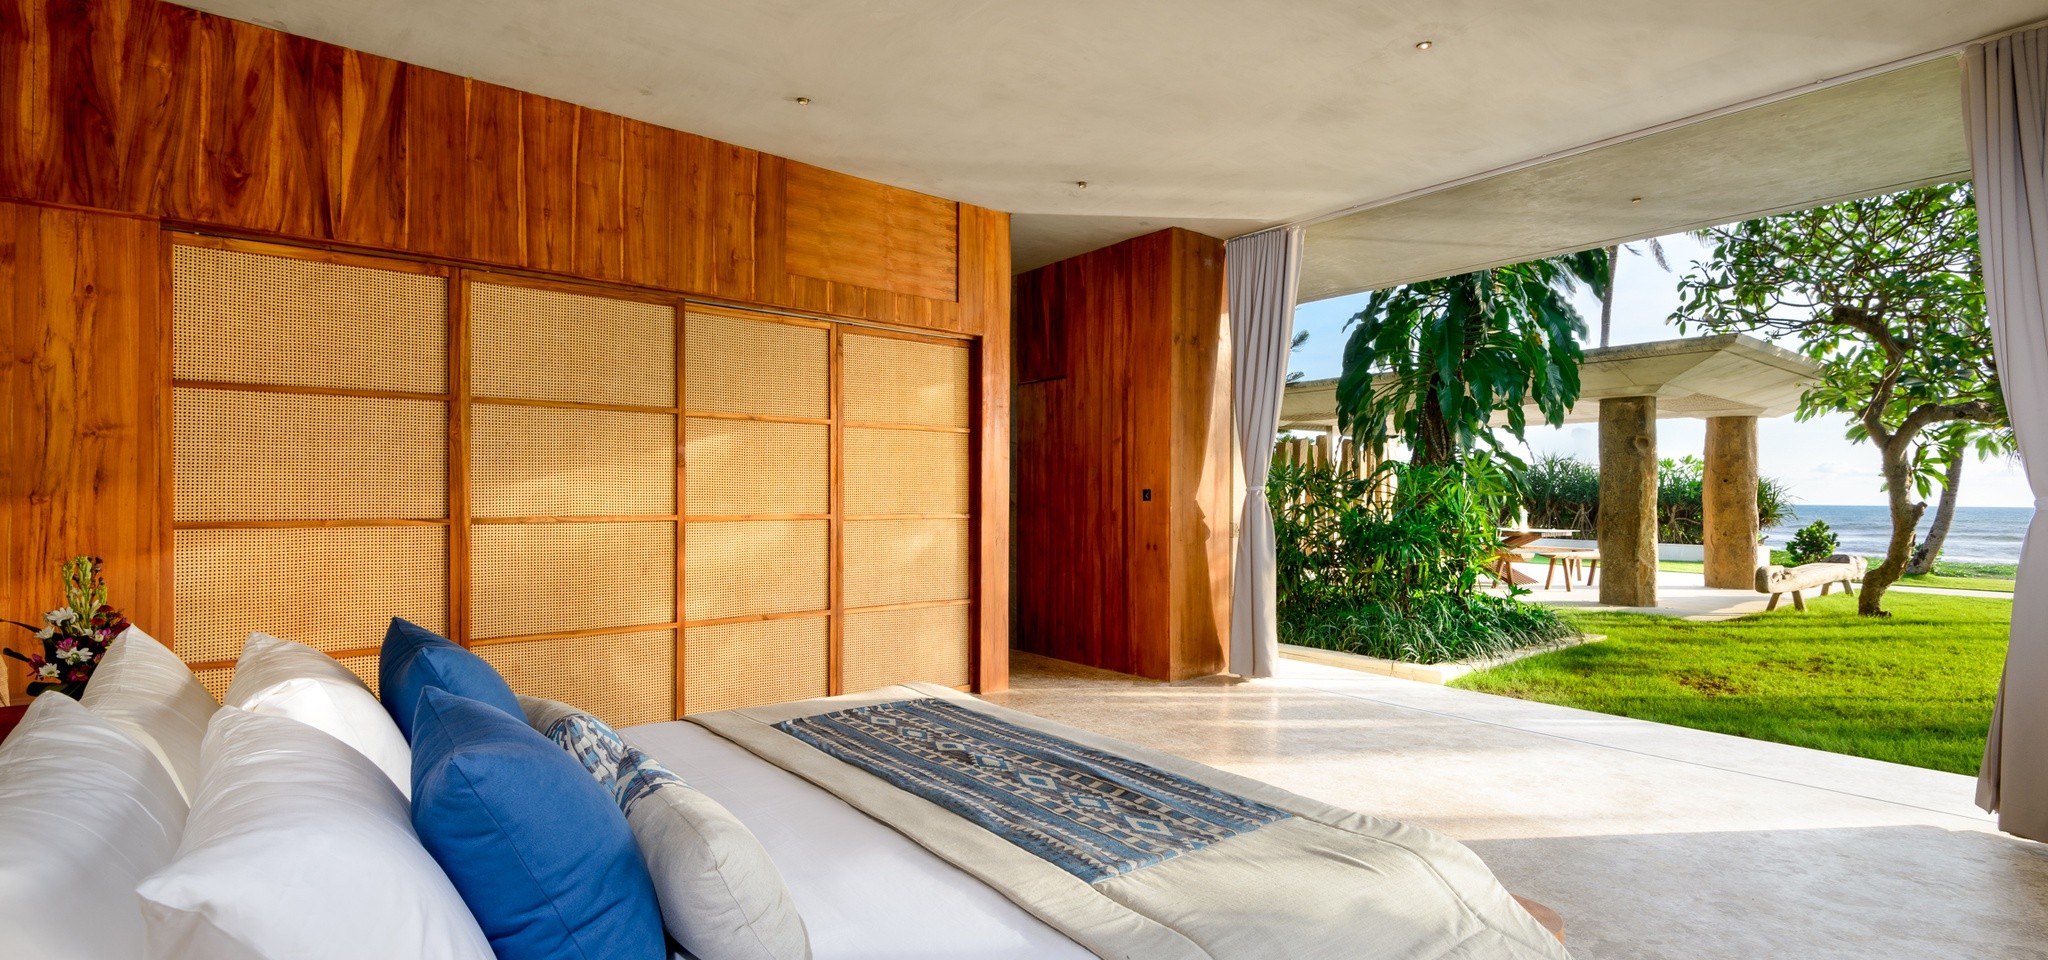 VillaVedas Bedroom9 – Villa Vedas – Bali – Indonesia